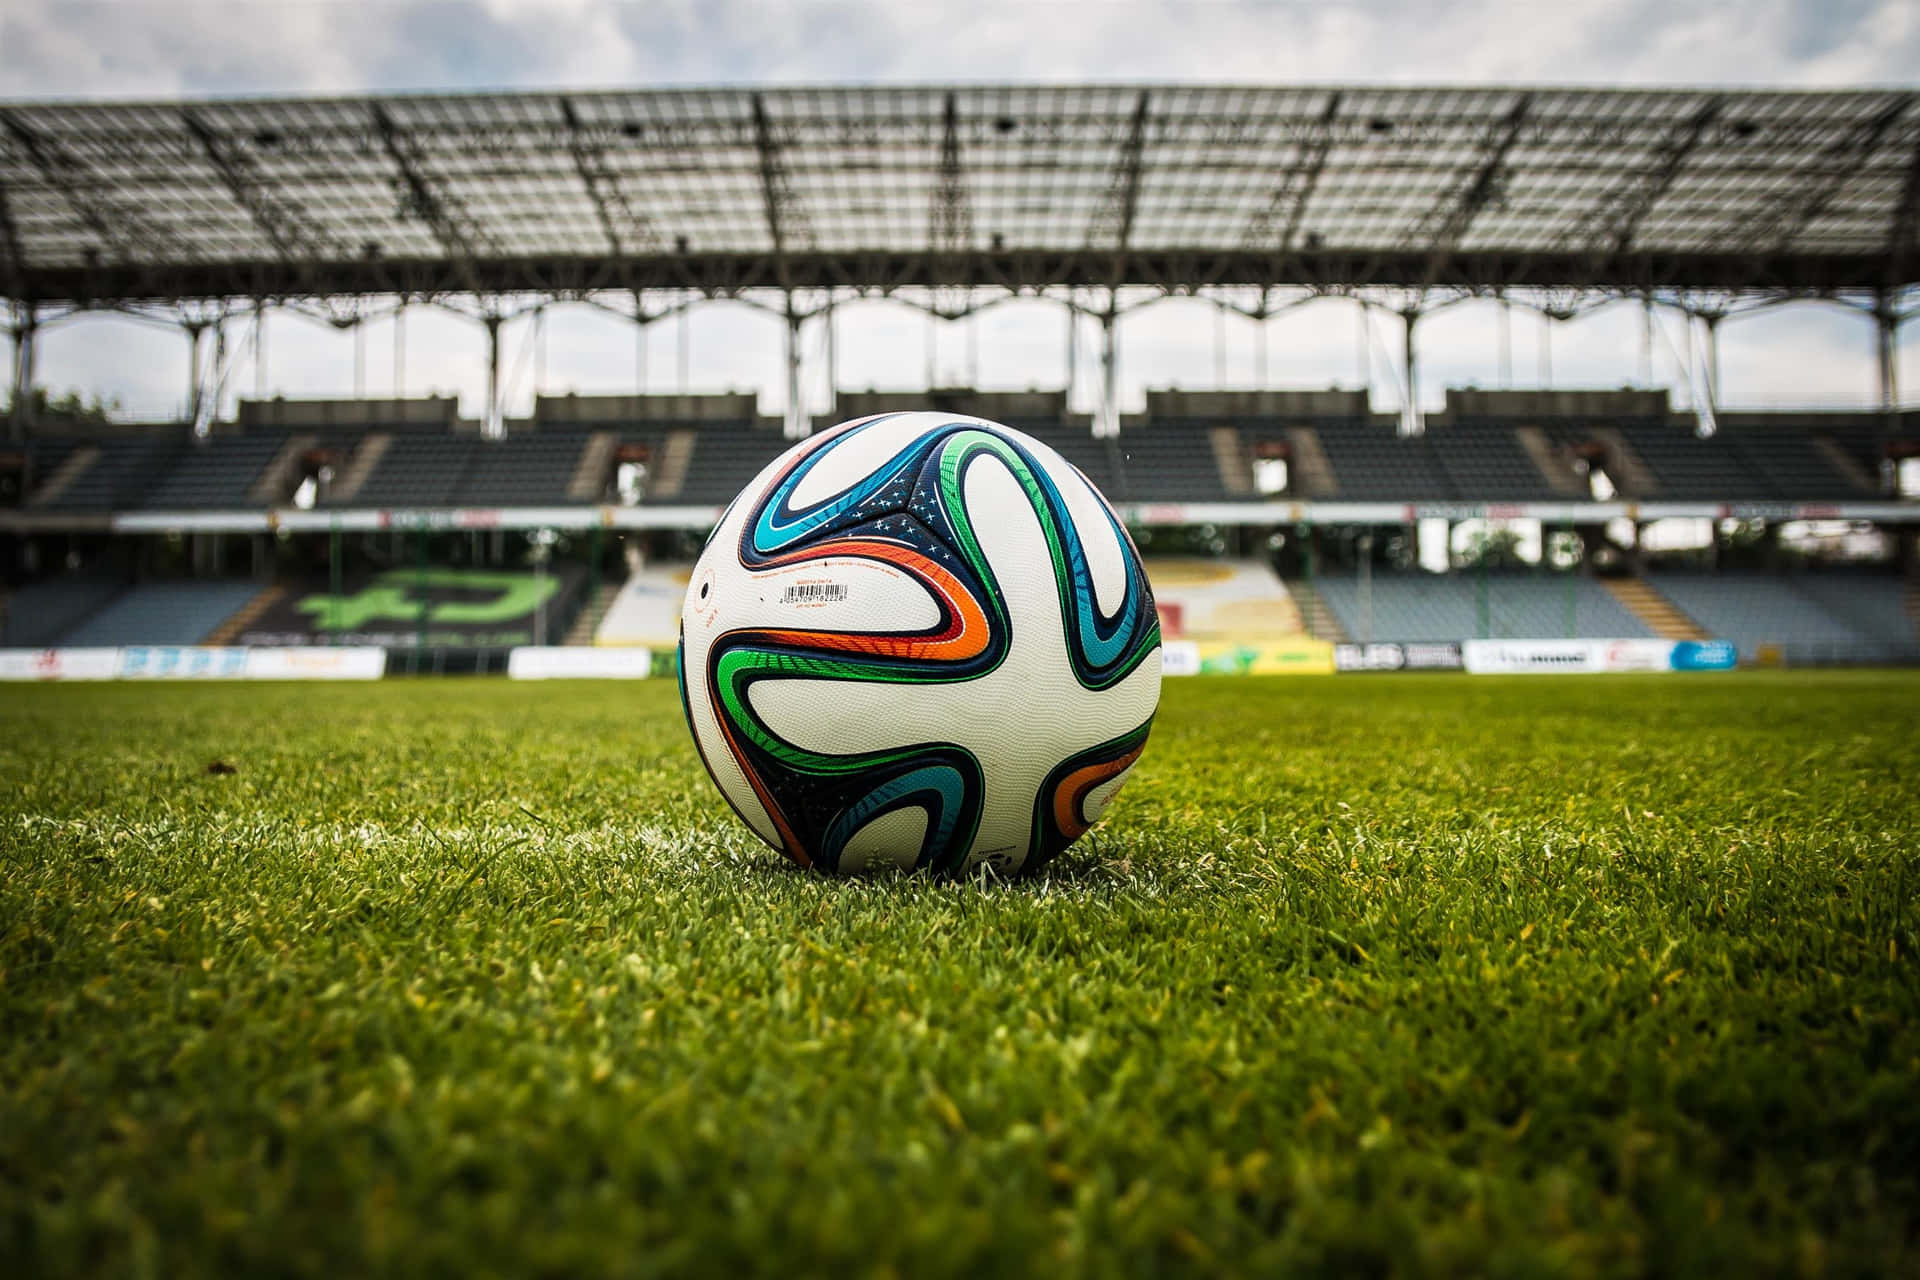 Balónde Fútbol Centrado En La Imagen Del Estadio.